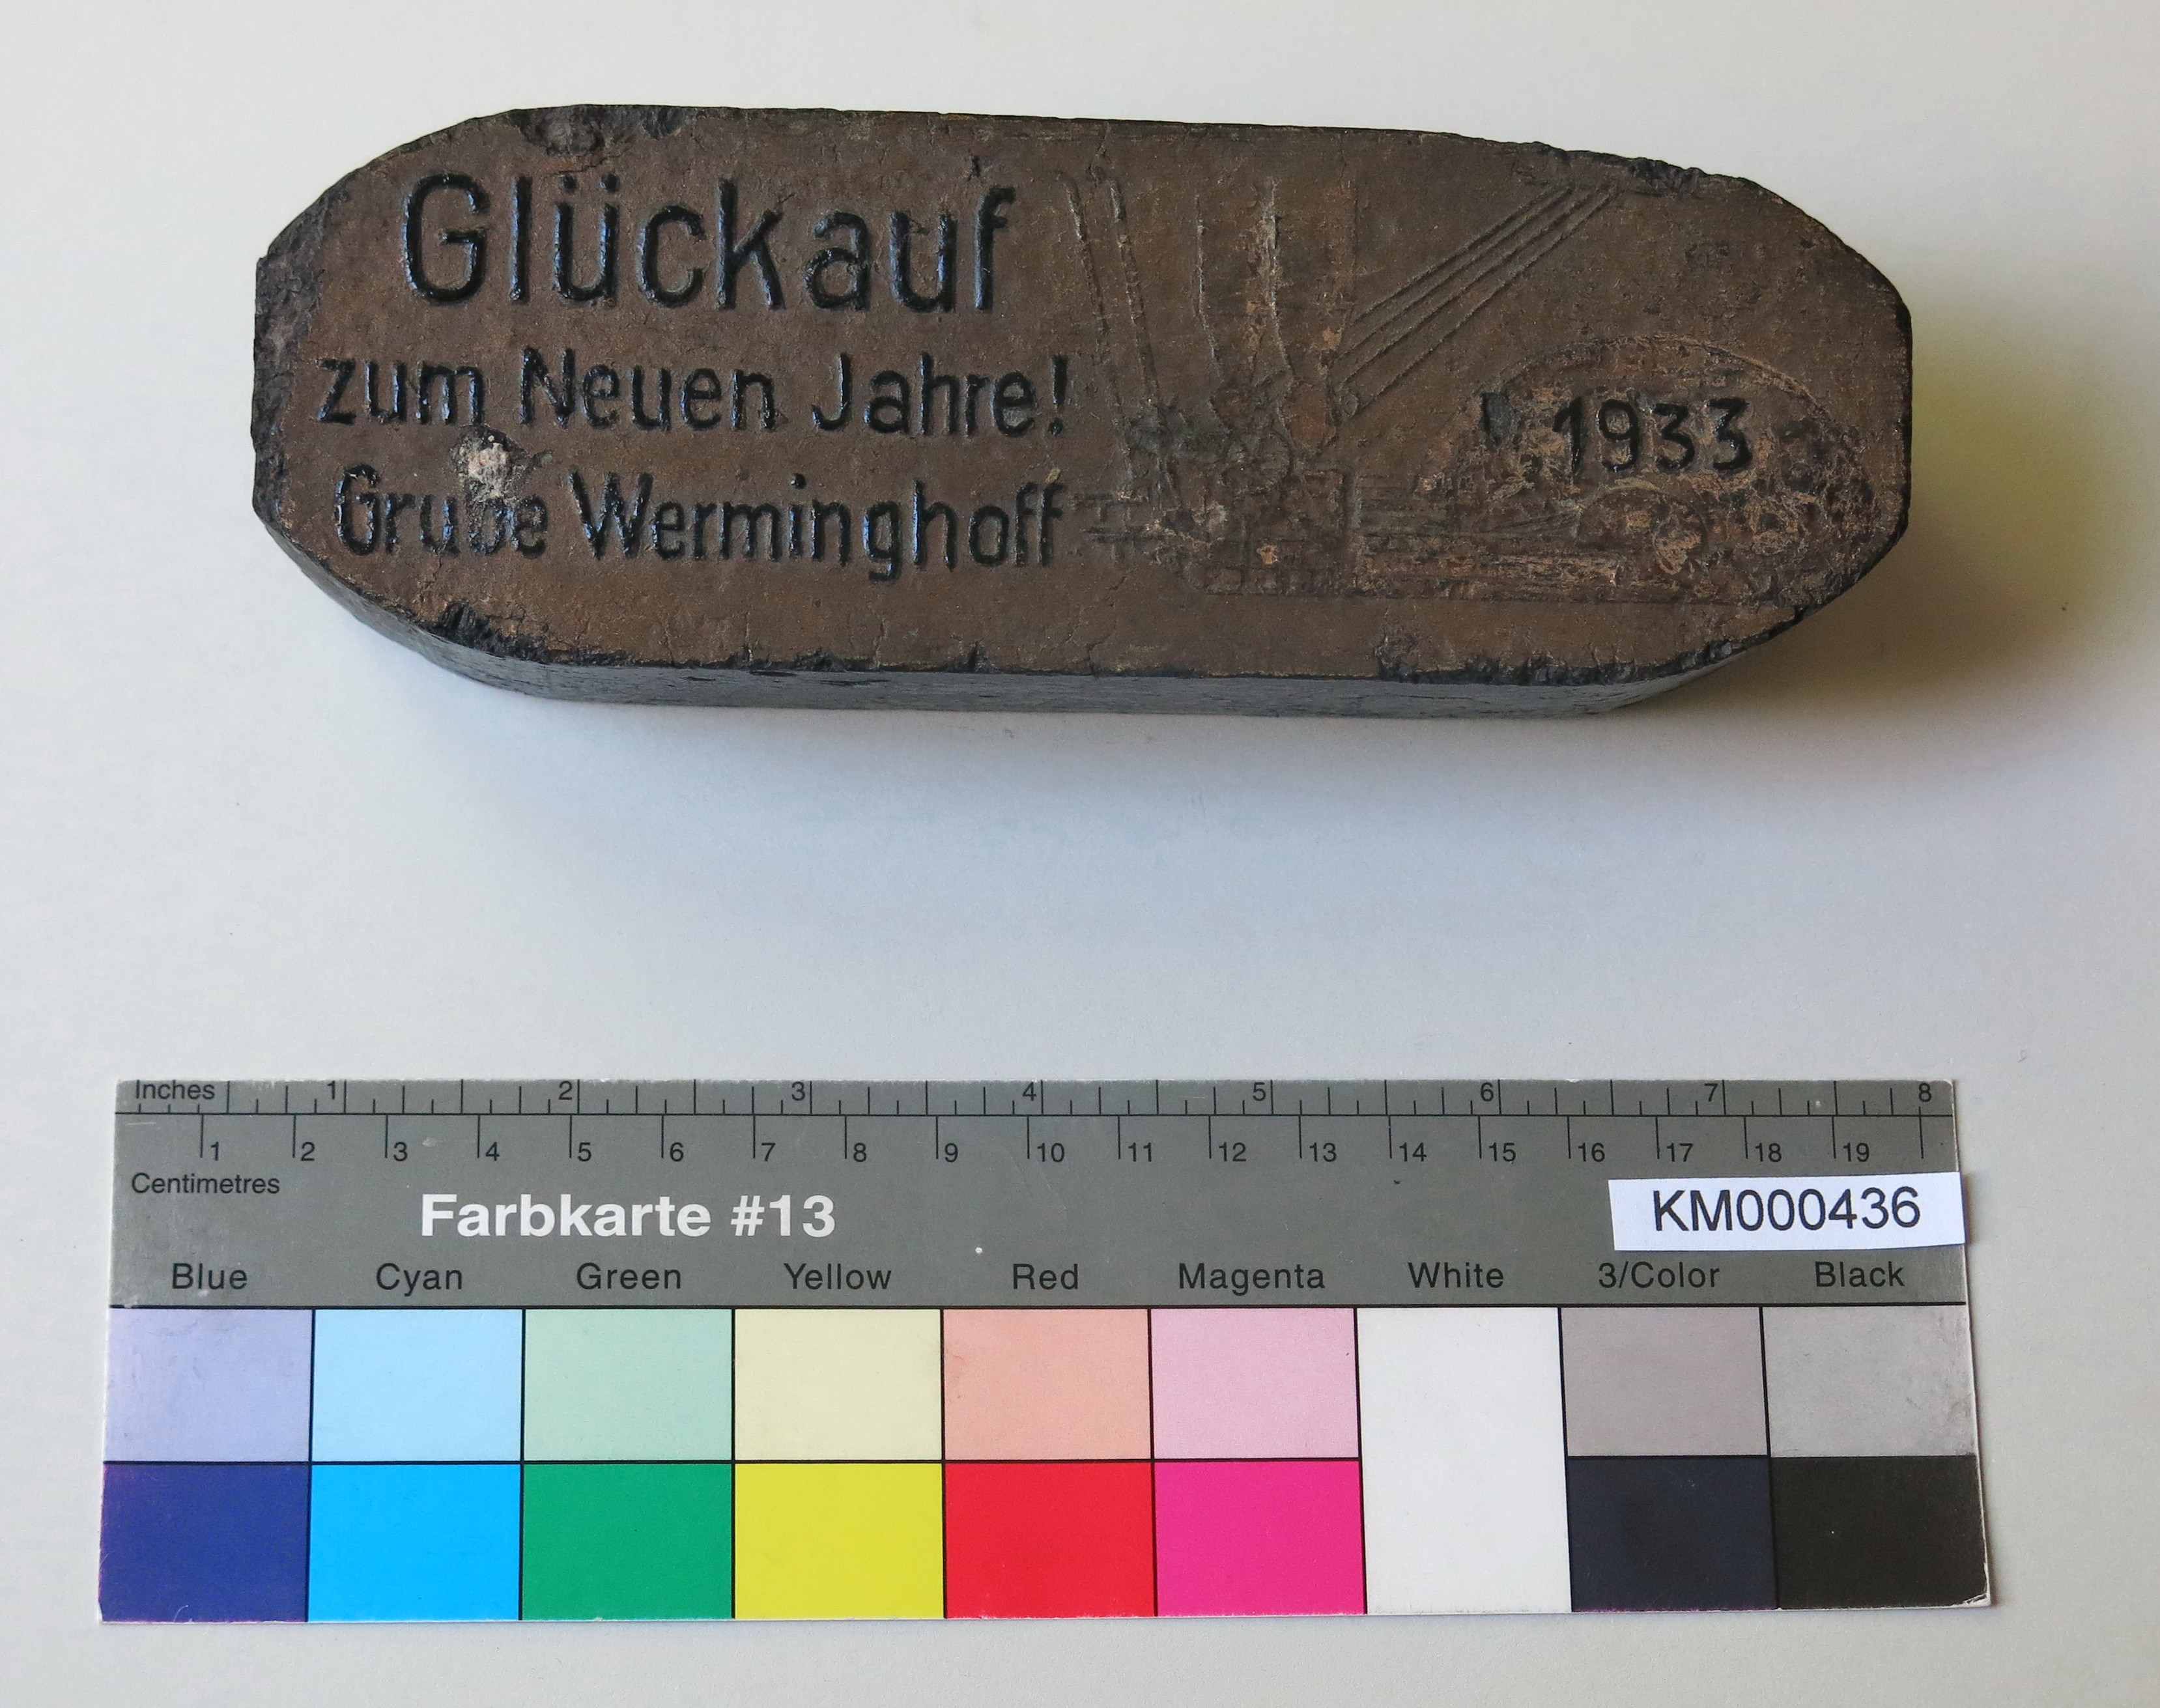 Zierbrikett "Glückauf zum Neuen Jahre! Grube Werminghoff 1933" (Energiefabrik Knappenrode CC BY-SA)